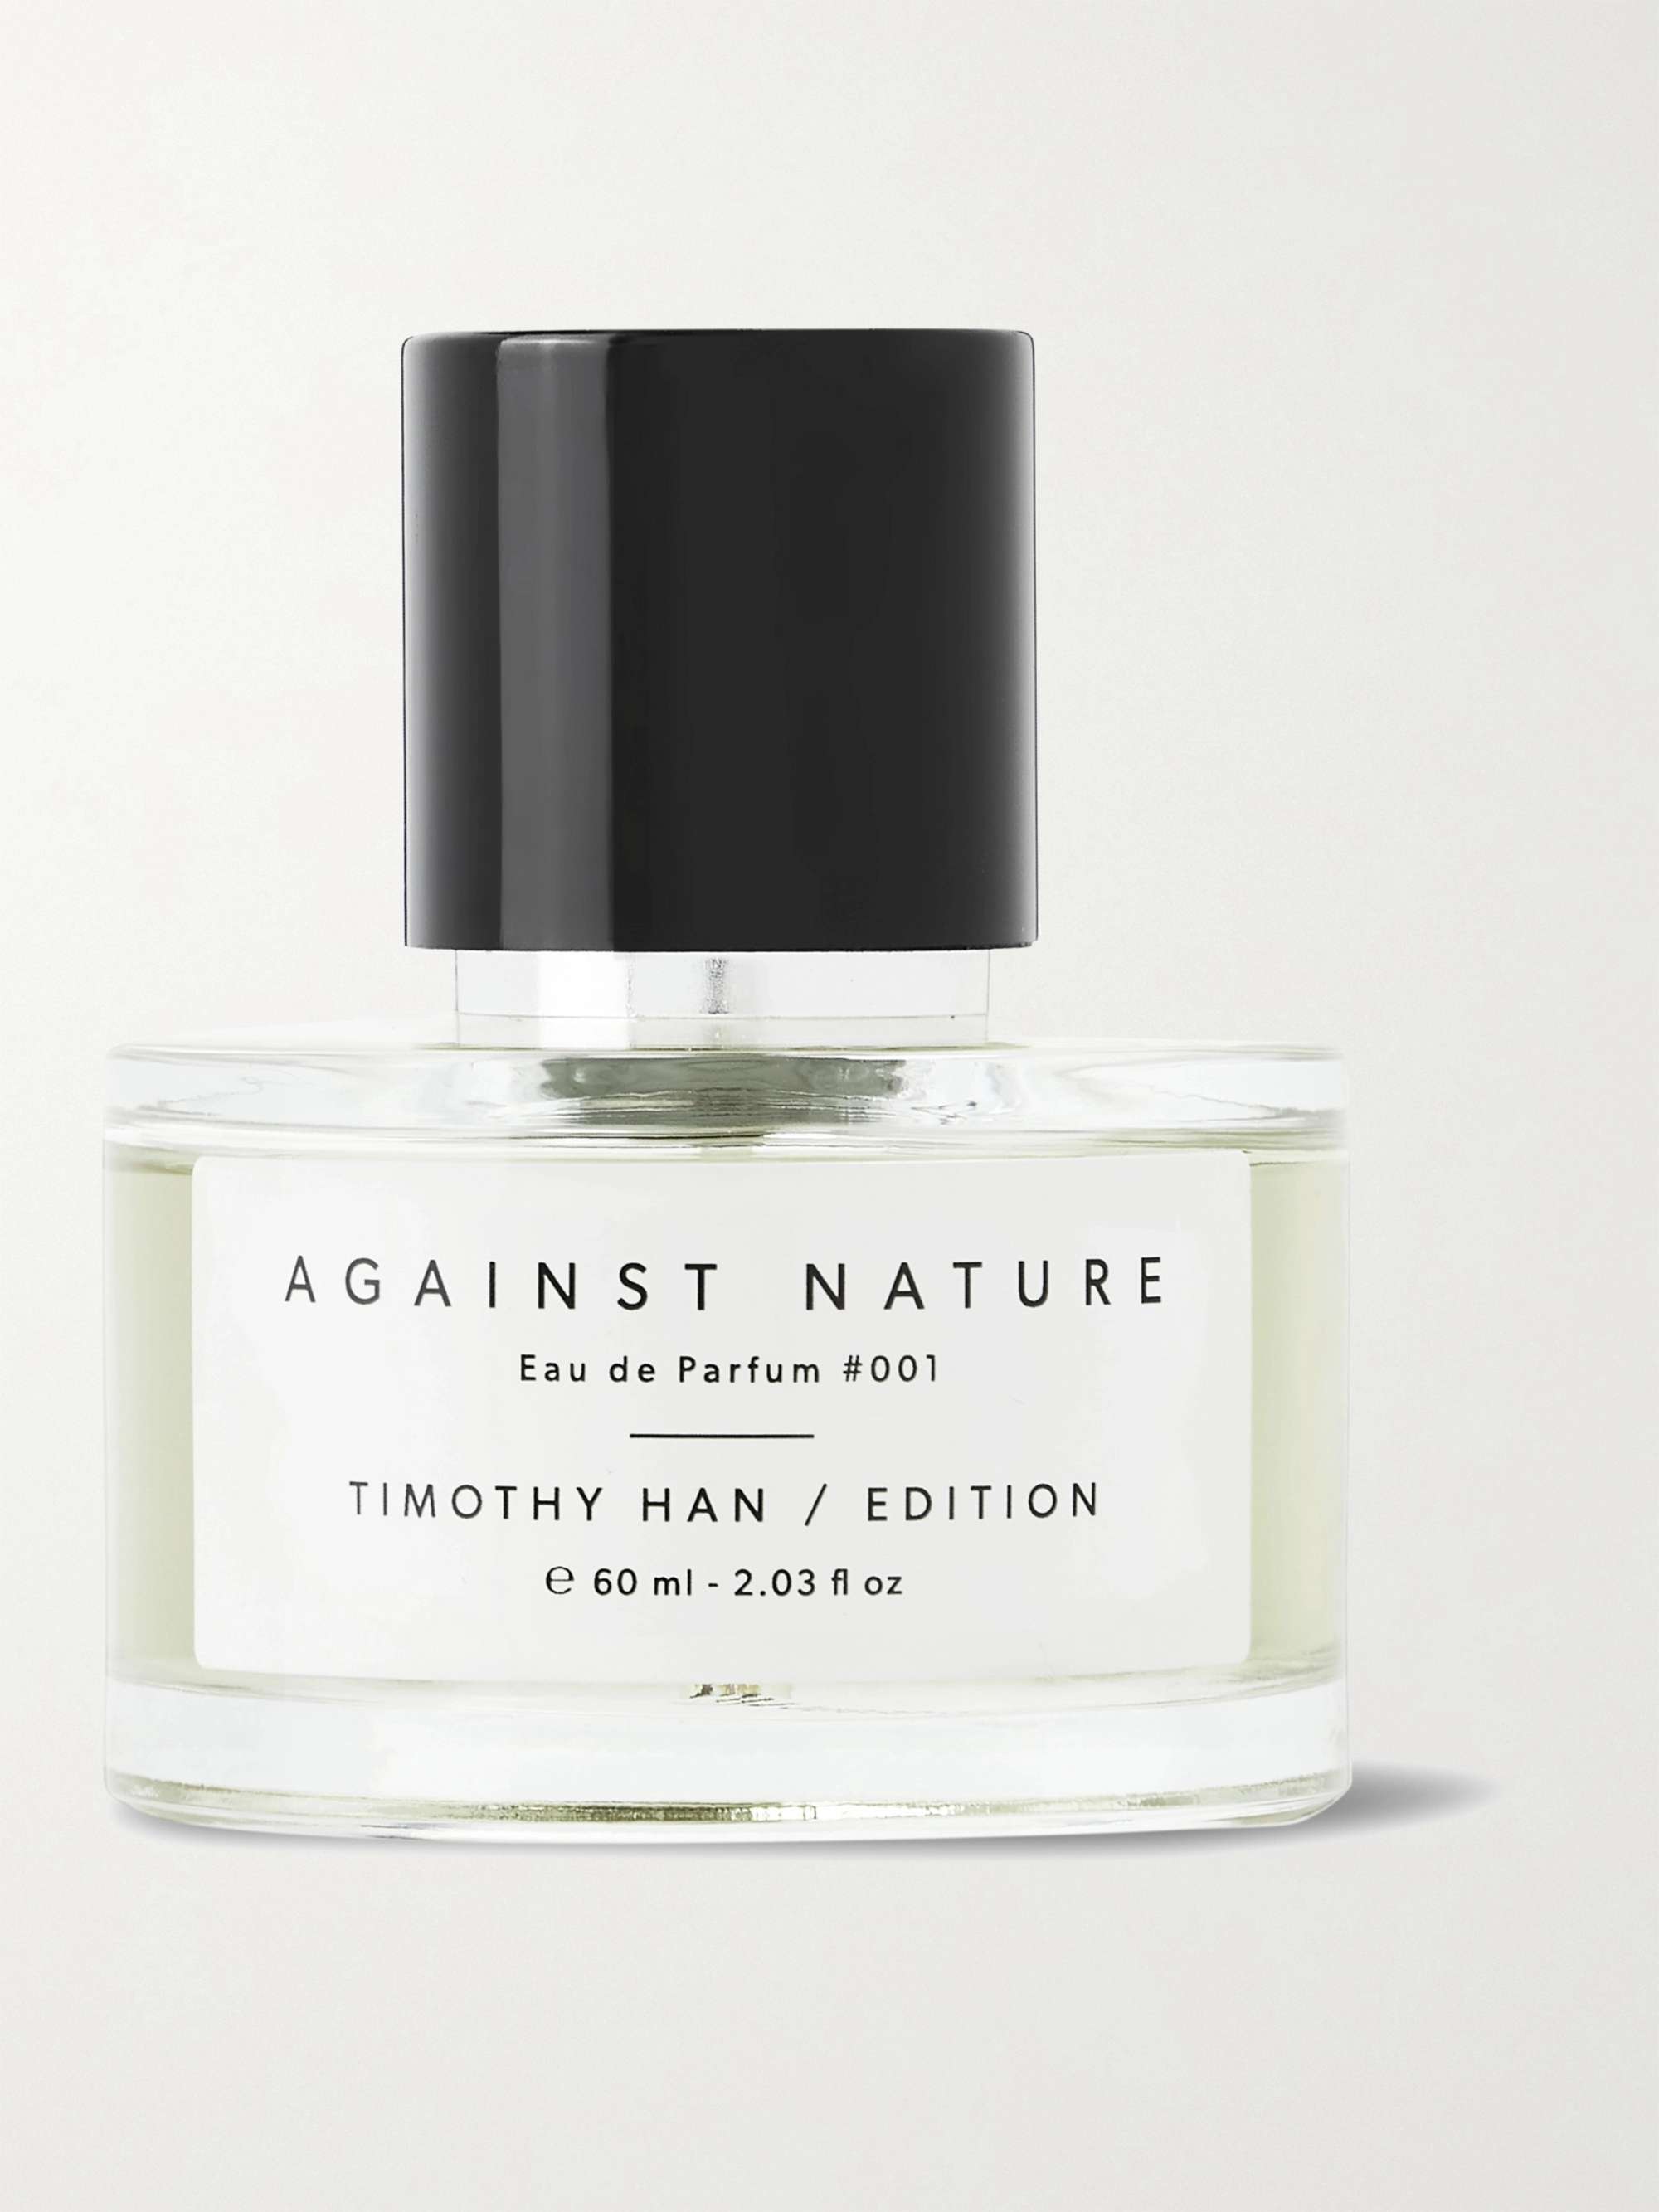 TIMOTHY HAN / EDITION Against Nature Eau de Parfum, 60ml